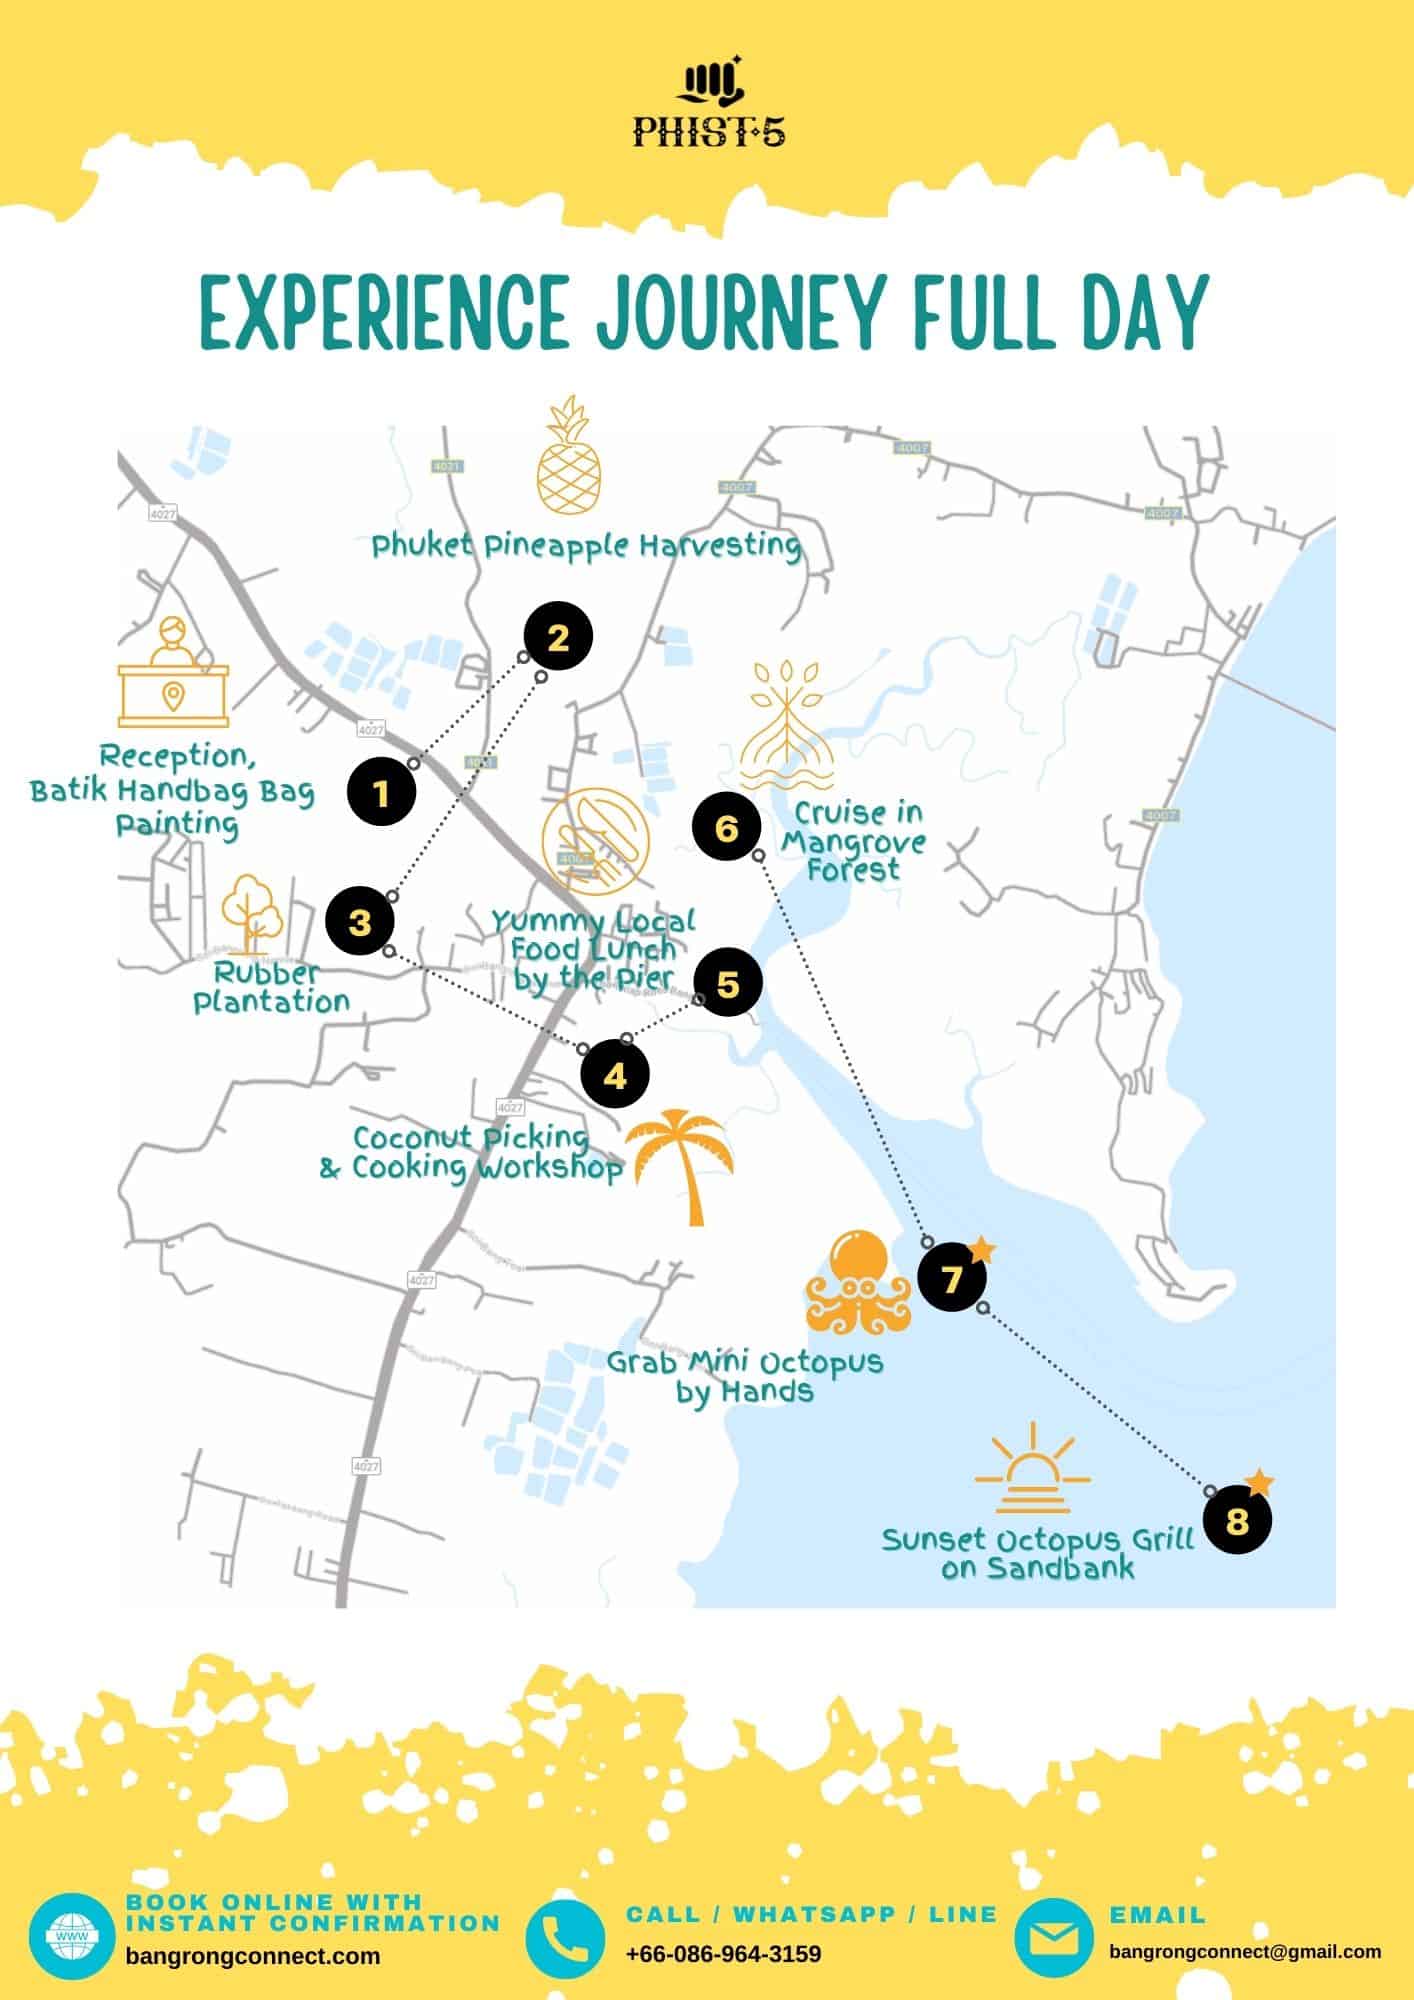 PHIST 2022 New Phuket Travel Experience Full Day Journey